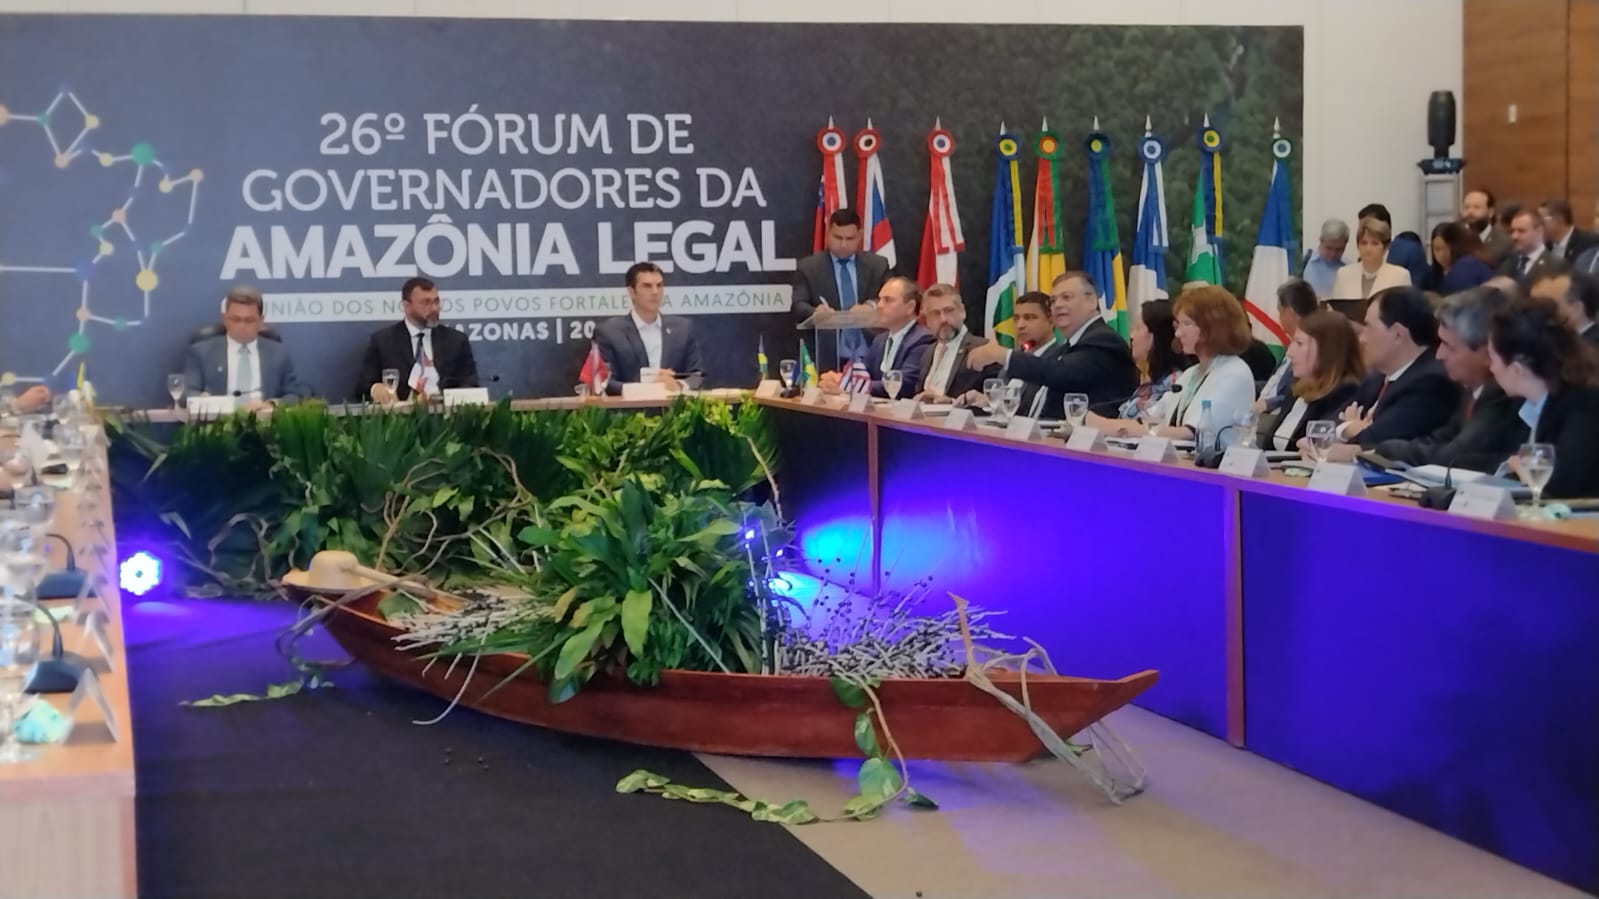 Amazonas sedia a Assembleia Geral do 26º Fórum dos Governadores da Amazônia Legal